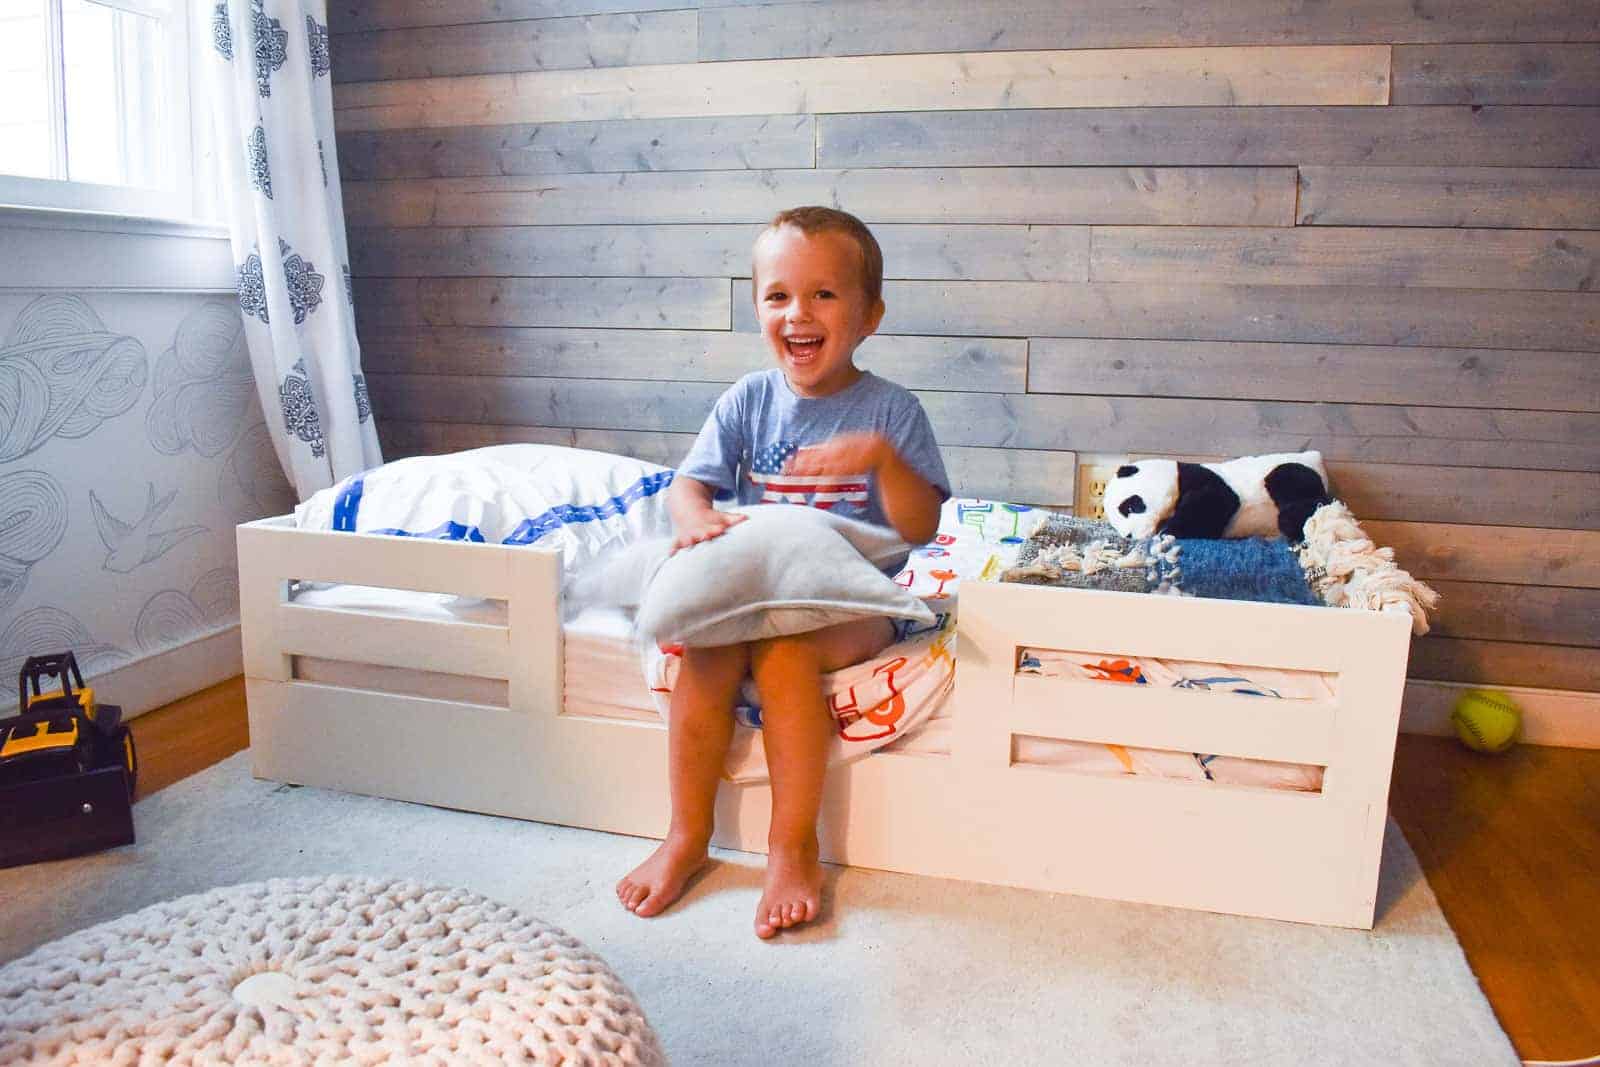 DIY Platform Toddler Bed With Bed Rails